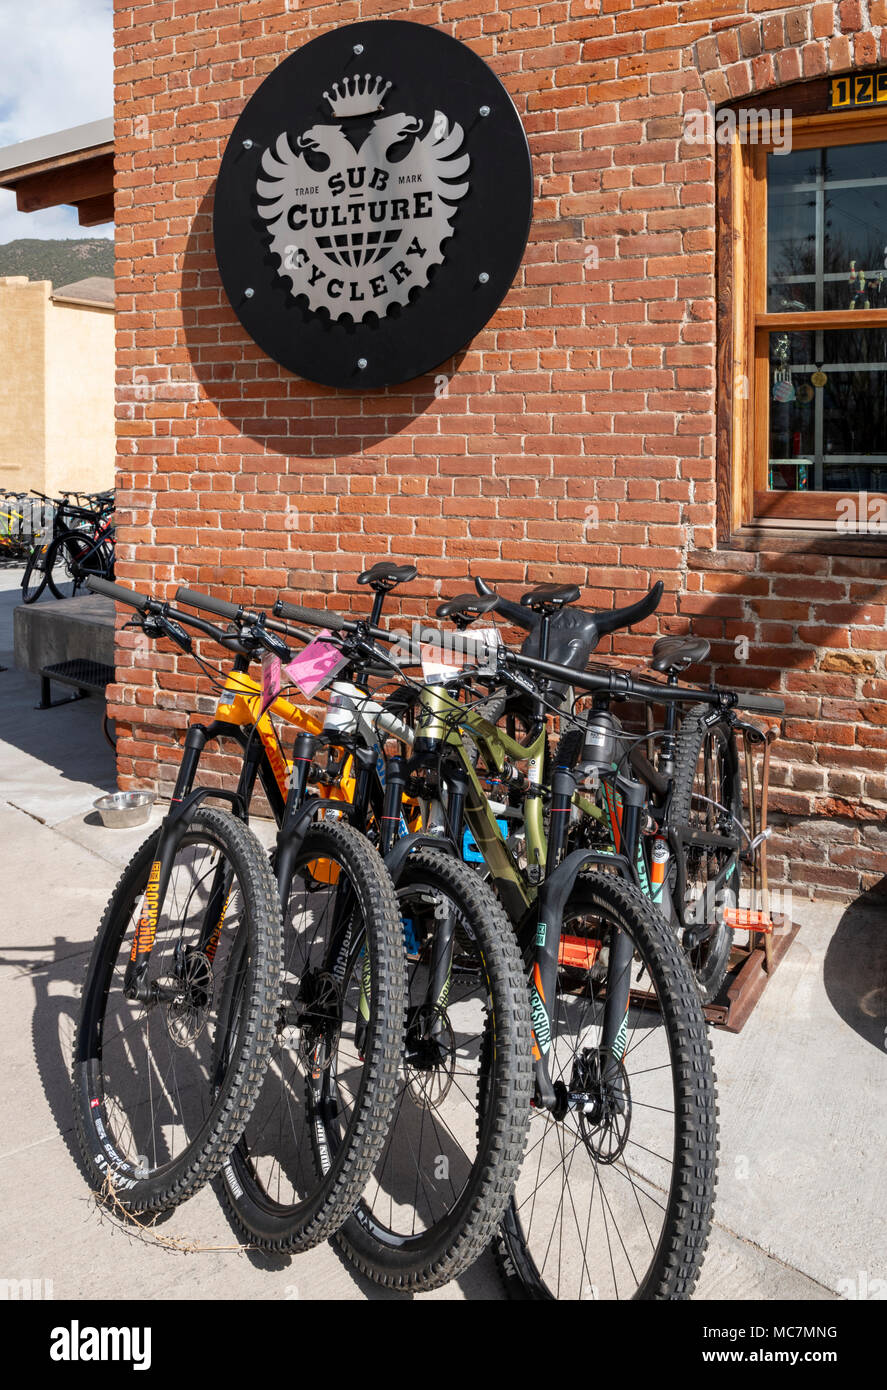 La culture sous Cyclery ; District historique national ; magasin de bicyclettes au centre-ville de Salida, Colorado, USA Banque D'Images